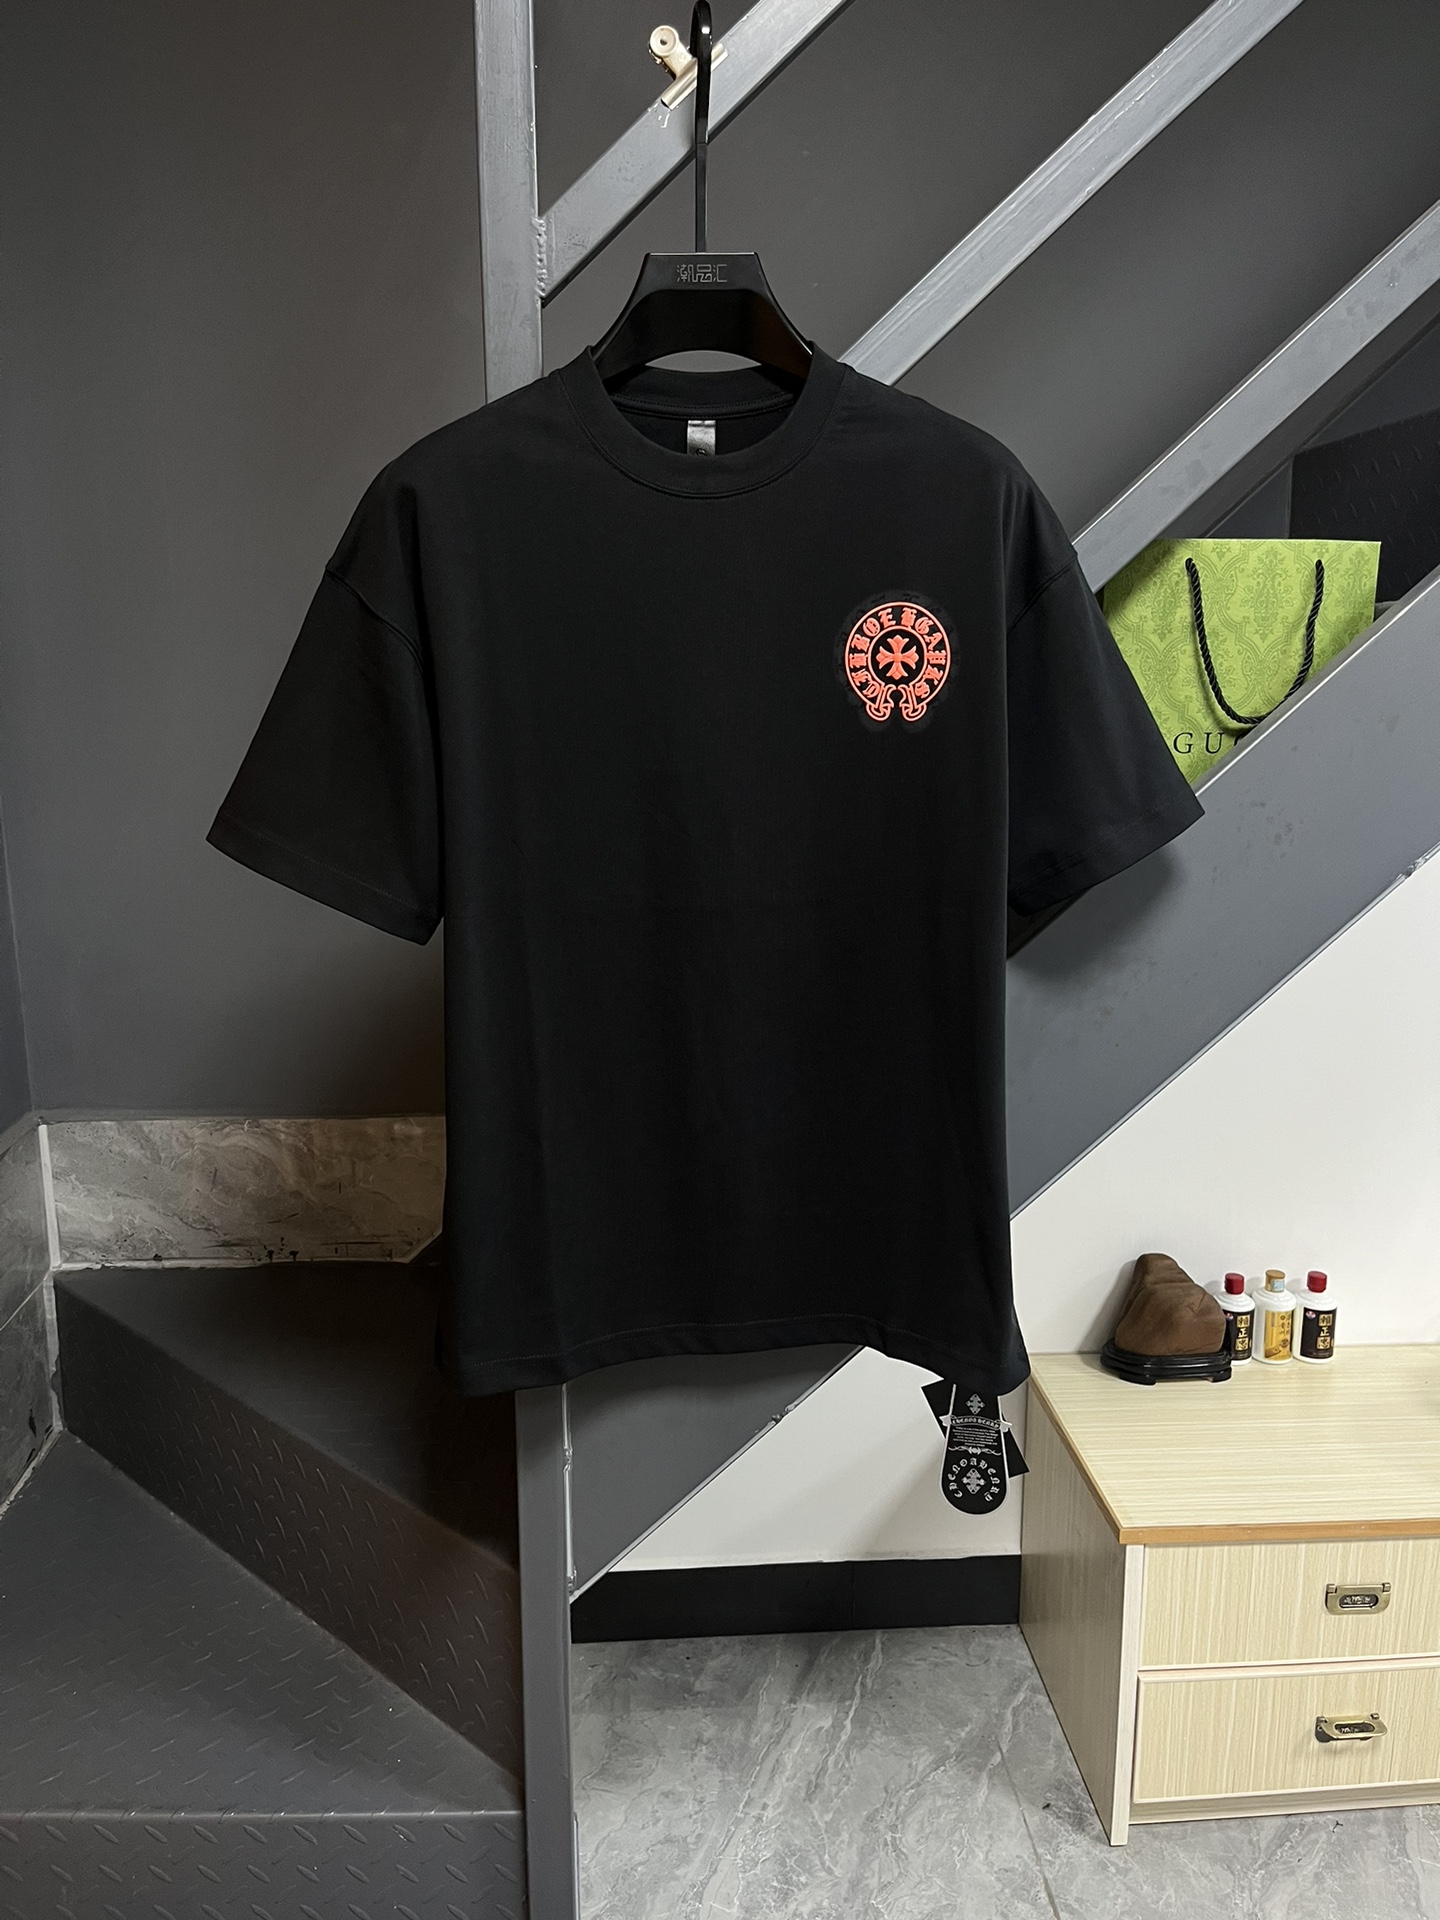 Chrome Hearts Clothing T-Shirt Beige Black Grey White Unisex Cotton Double Yarn Short Sleeve